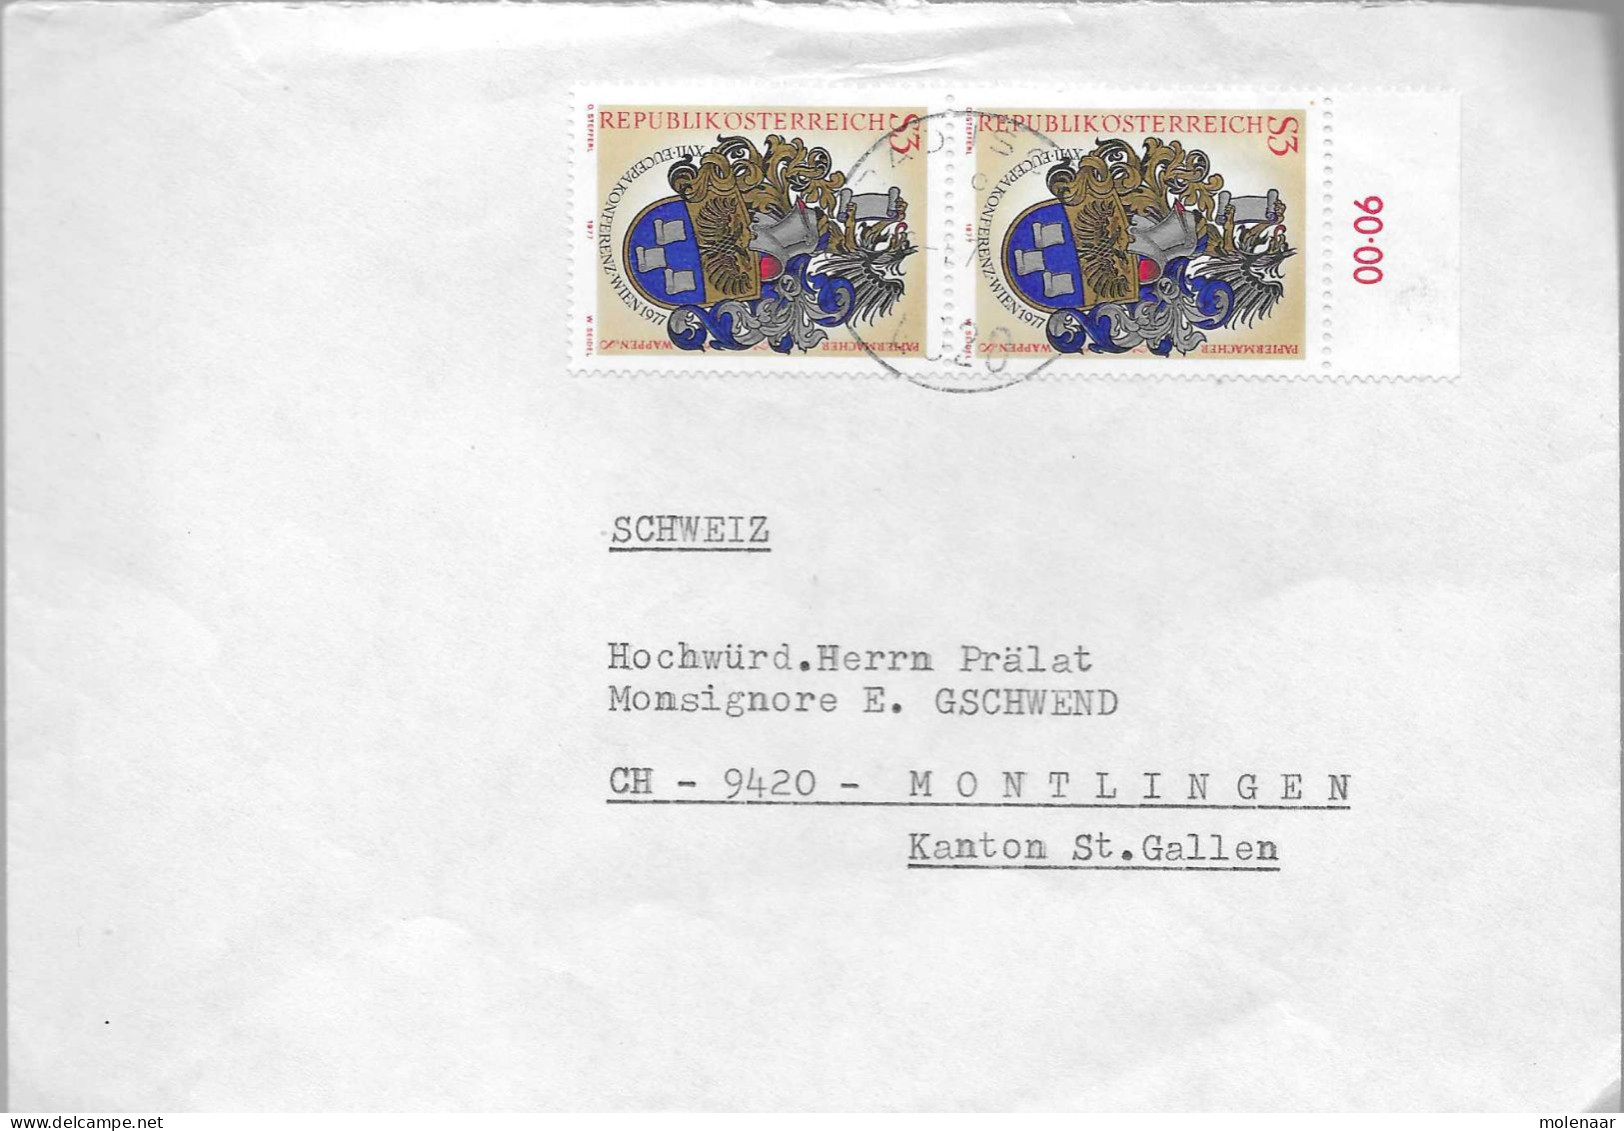 Postzegels > Europa > Oostenrijk > 1945-.... 2de Republiek > 1971-1980 > Brief Met 2x No. 1601 (17739) - Unused Stamps